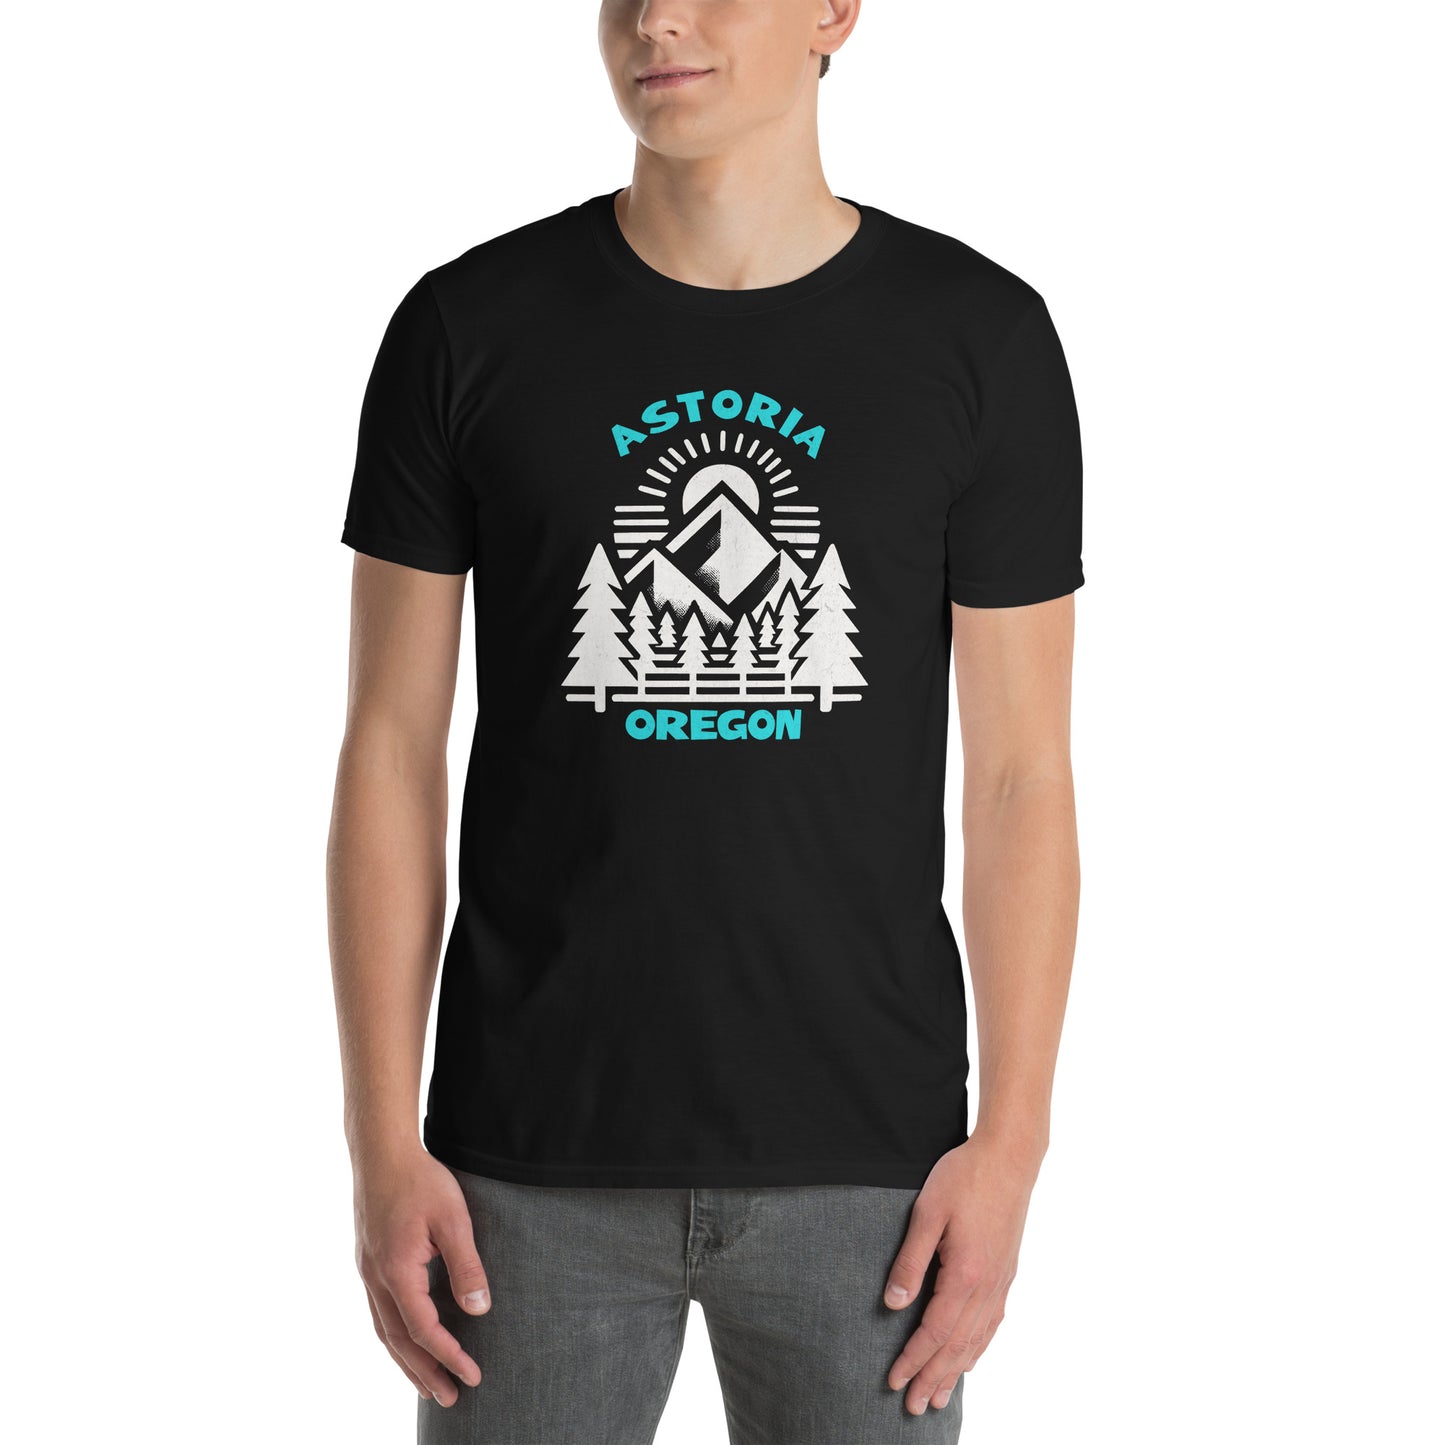 Astoria - Featured Cities - Short-Sleeve Unisex T-Shirt